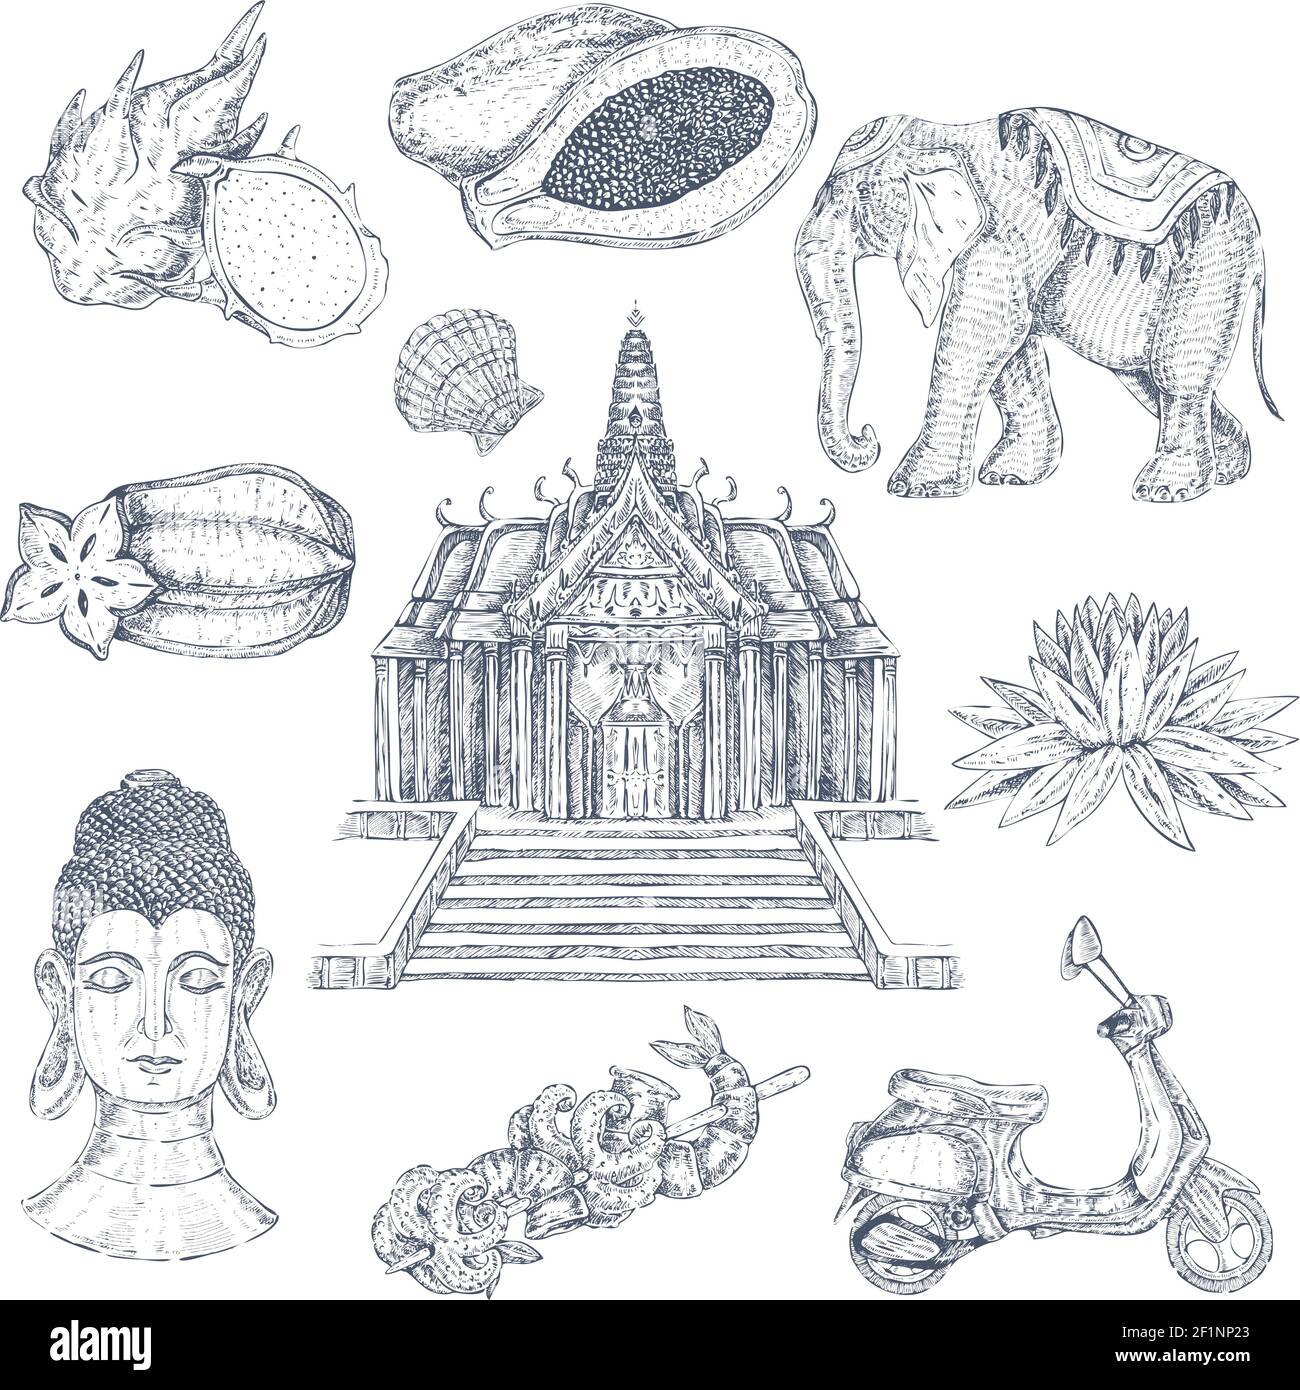 Simboli thailandesi monocromatici disegnati a mano con immagini isolate di decorazioni thailandesi tempio elefante e blockhead illustrazione vettoriale Illustrazione Vettoriale